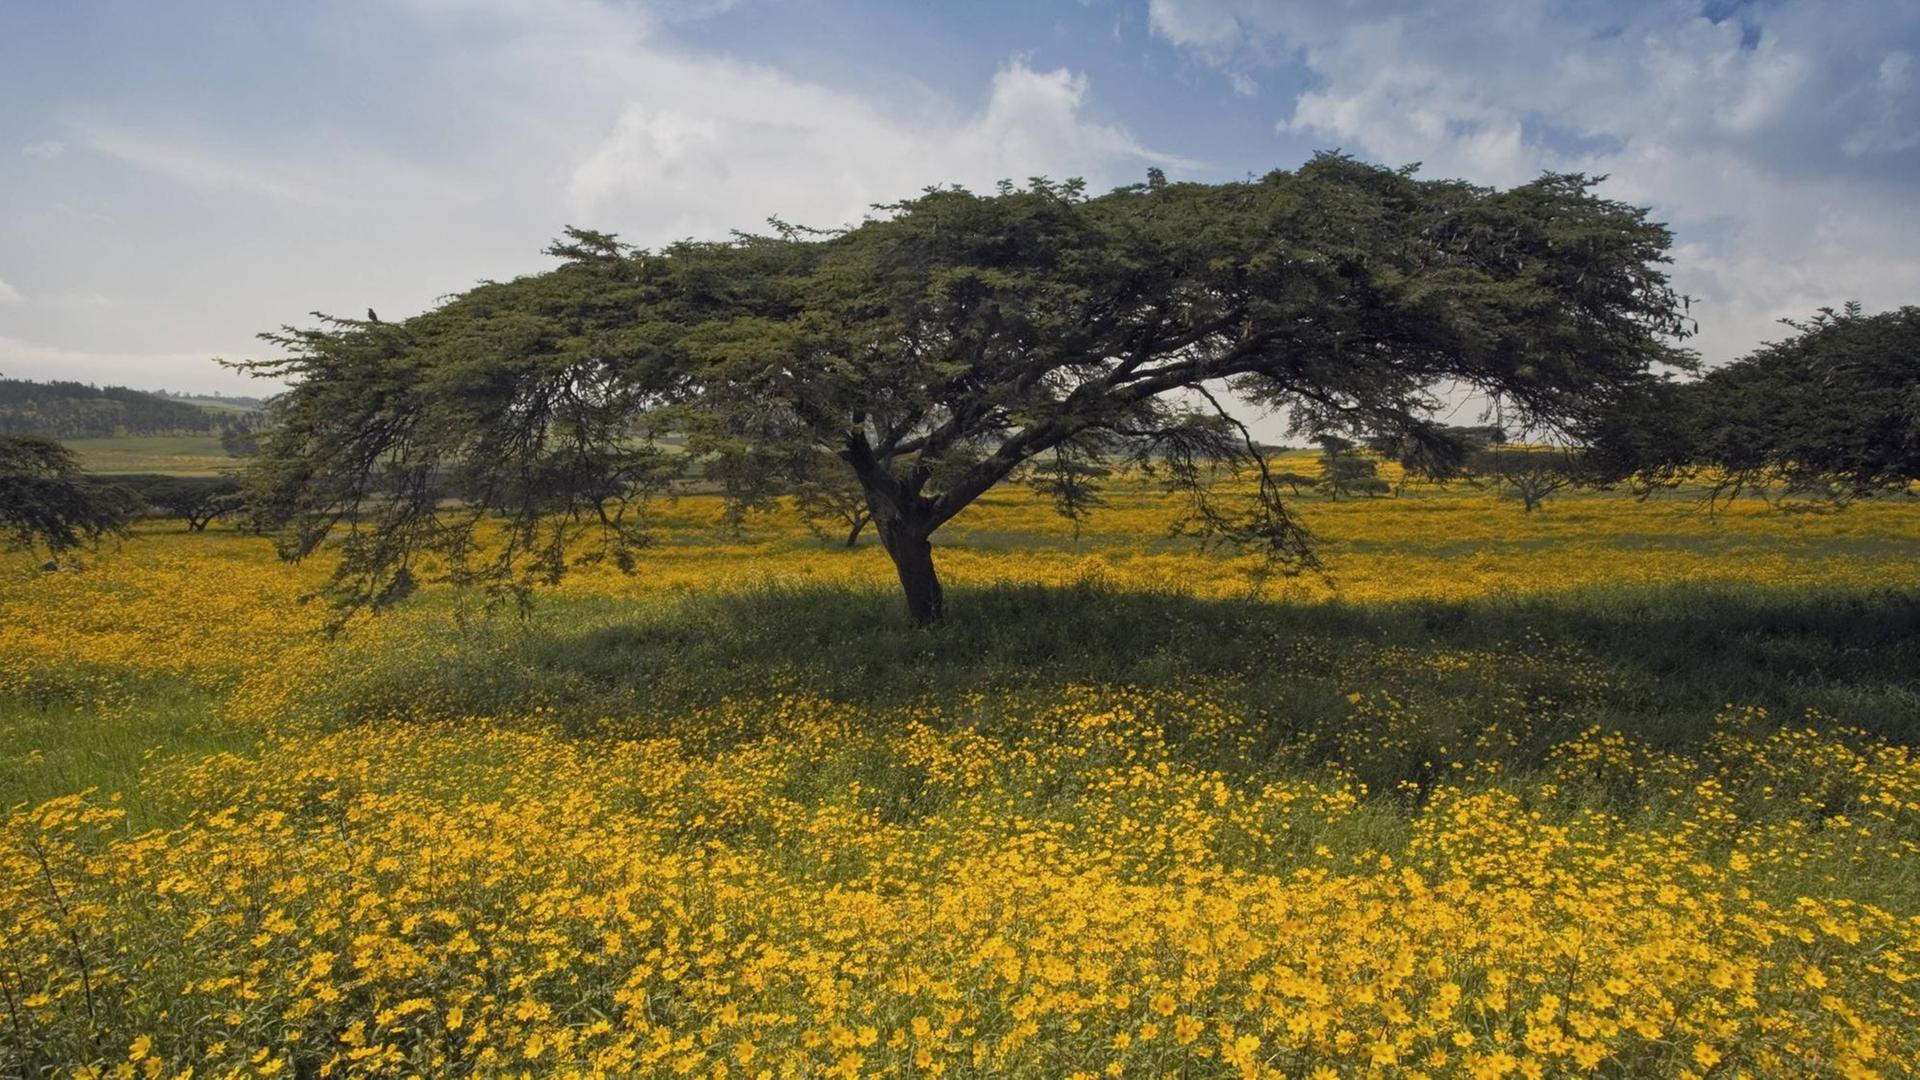 Ein Akazienbaum auf einer Wiese mit gelben Meskel-Blumen in der Hochebene von Äthiopien nach dem Regen.